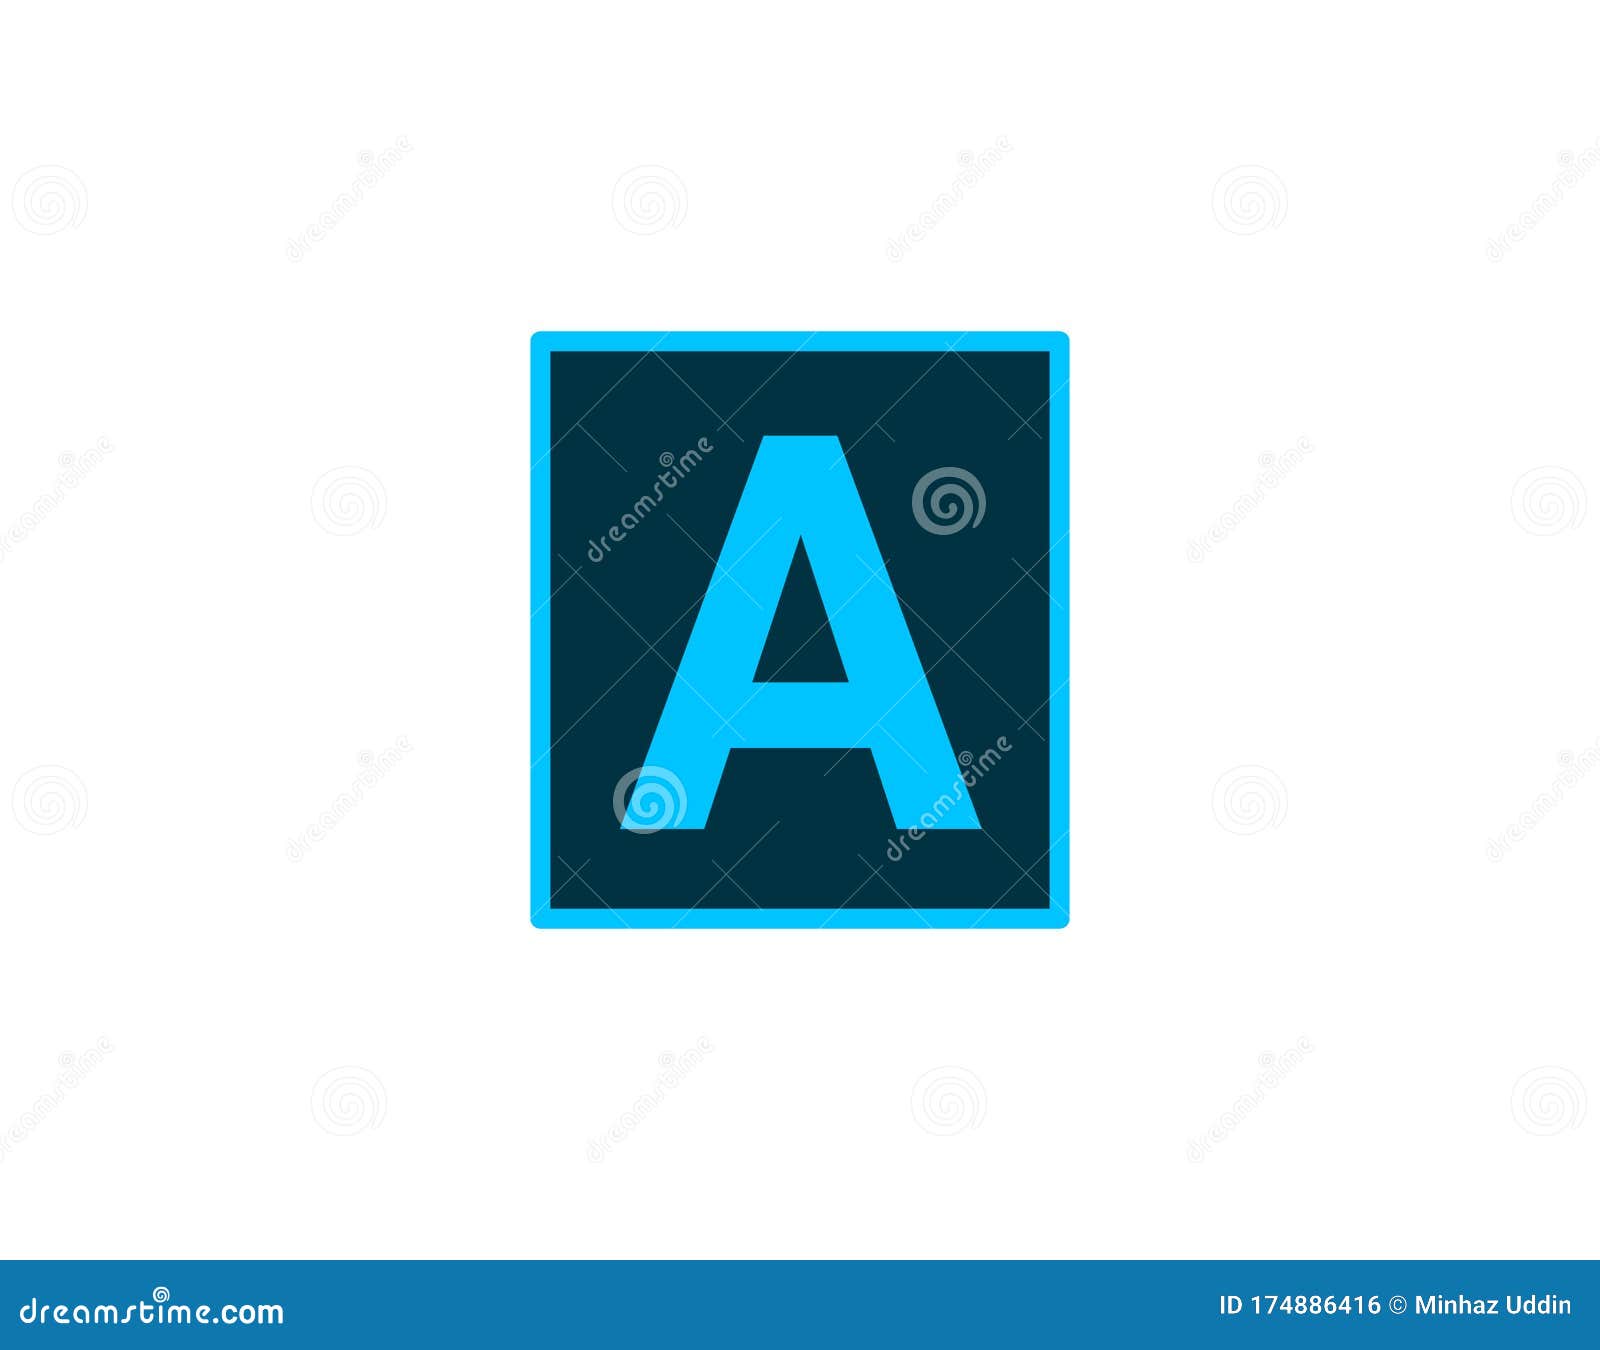 Adobe Photoshop Logo Vector Design Adobe Logos Vector Graphics Stock